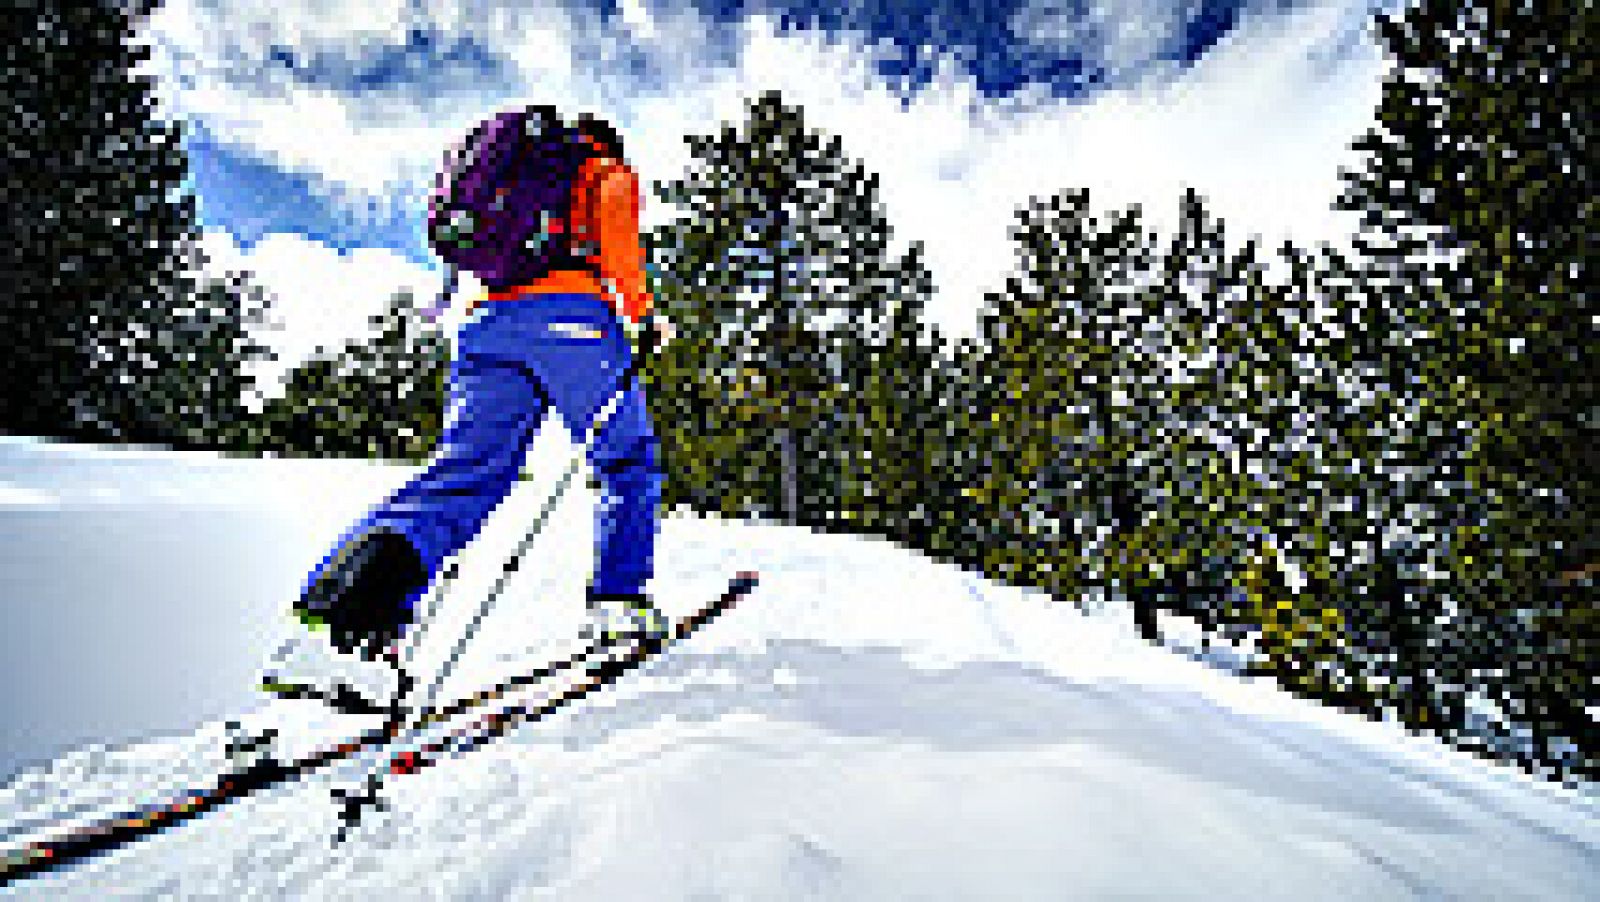 Con los 93 kilómetros esquiables que forman el entramado de pistas dividido en dos estaciones, la magia se tiñe de blanco en Vallnord para ofrecer una experiencia única con la mejor nieve y un entorno inimitable.